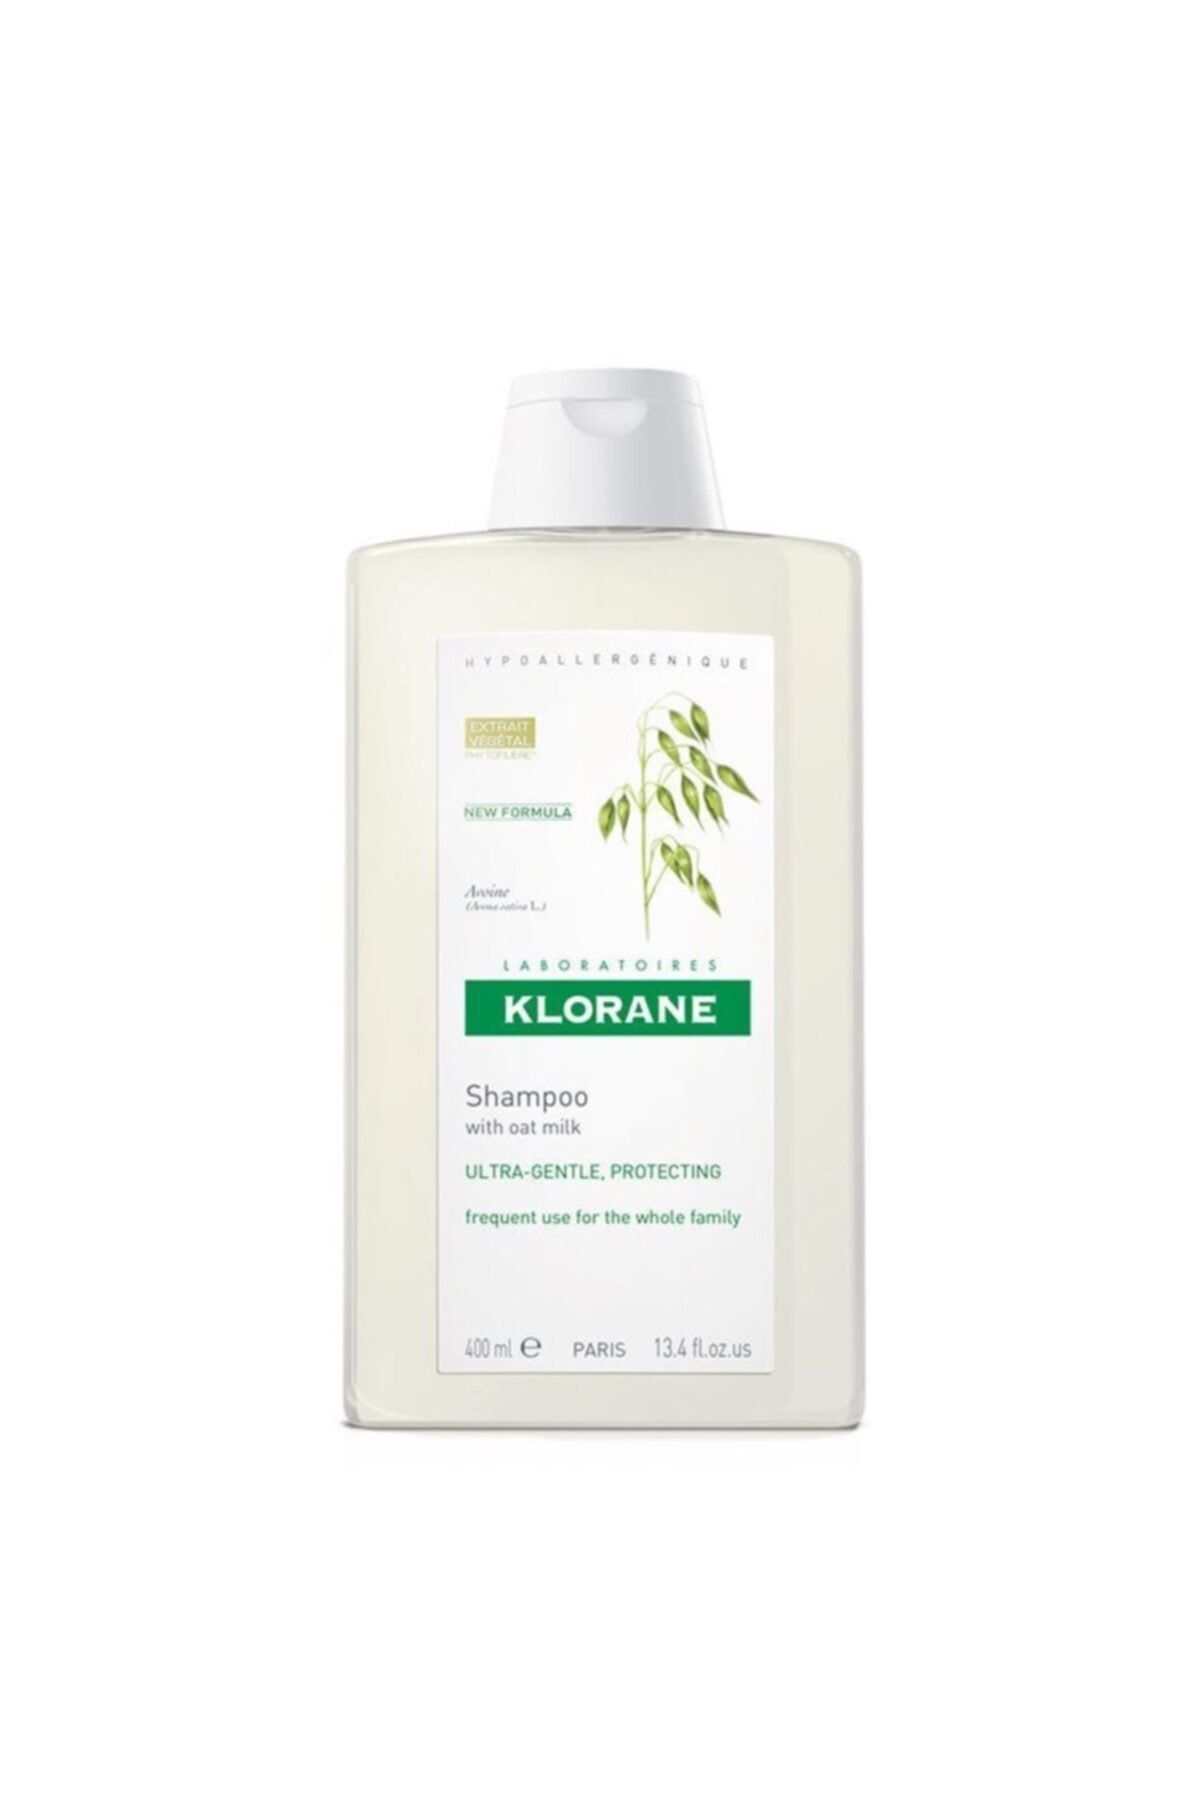 Klorane Shampooing D'avoine 400 Ml - Yulaf Sütlü Şampuan (sık Kullanım)